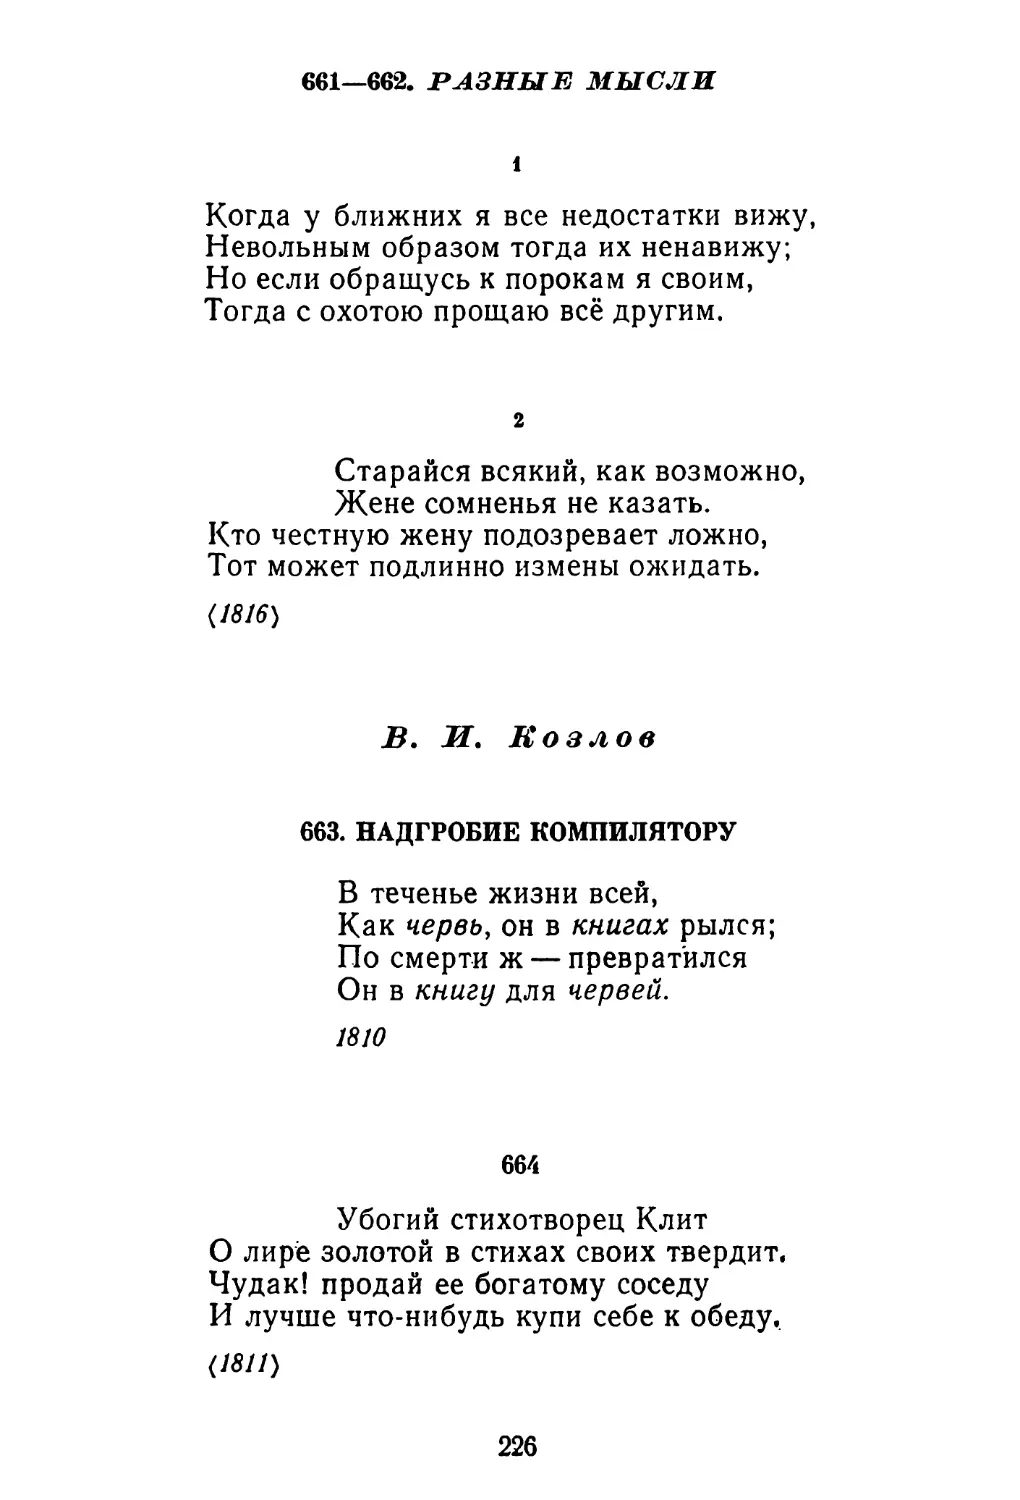 В. И. Козлов